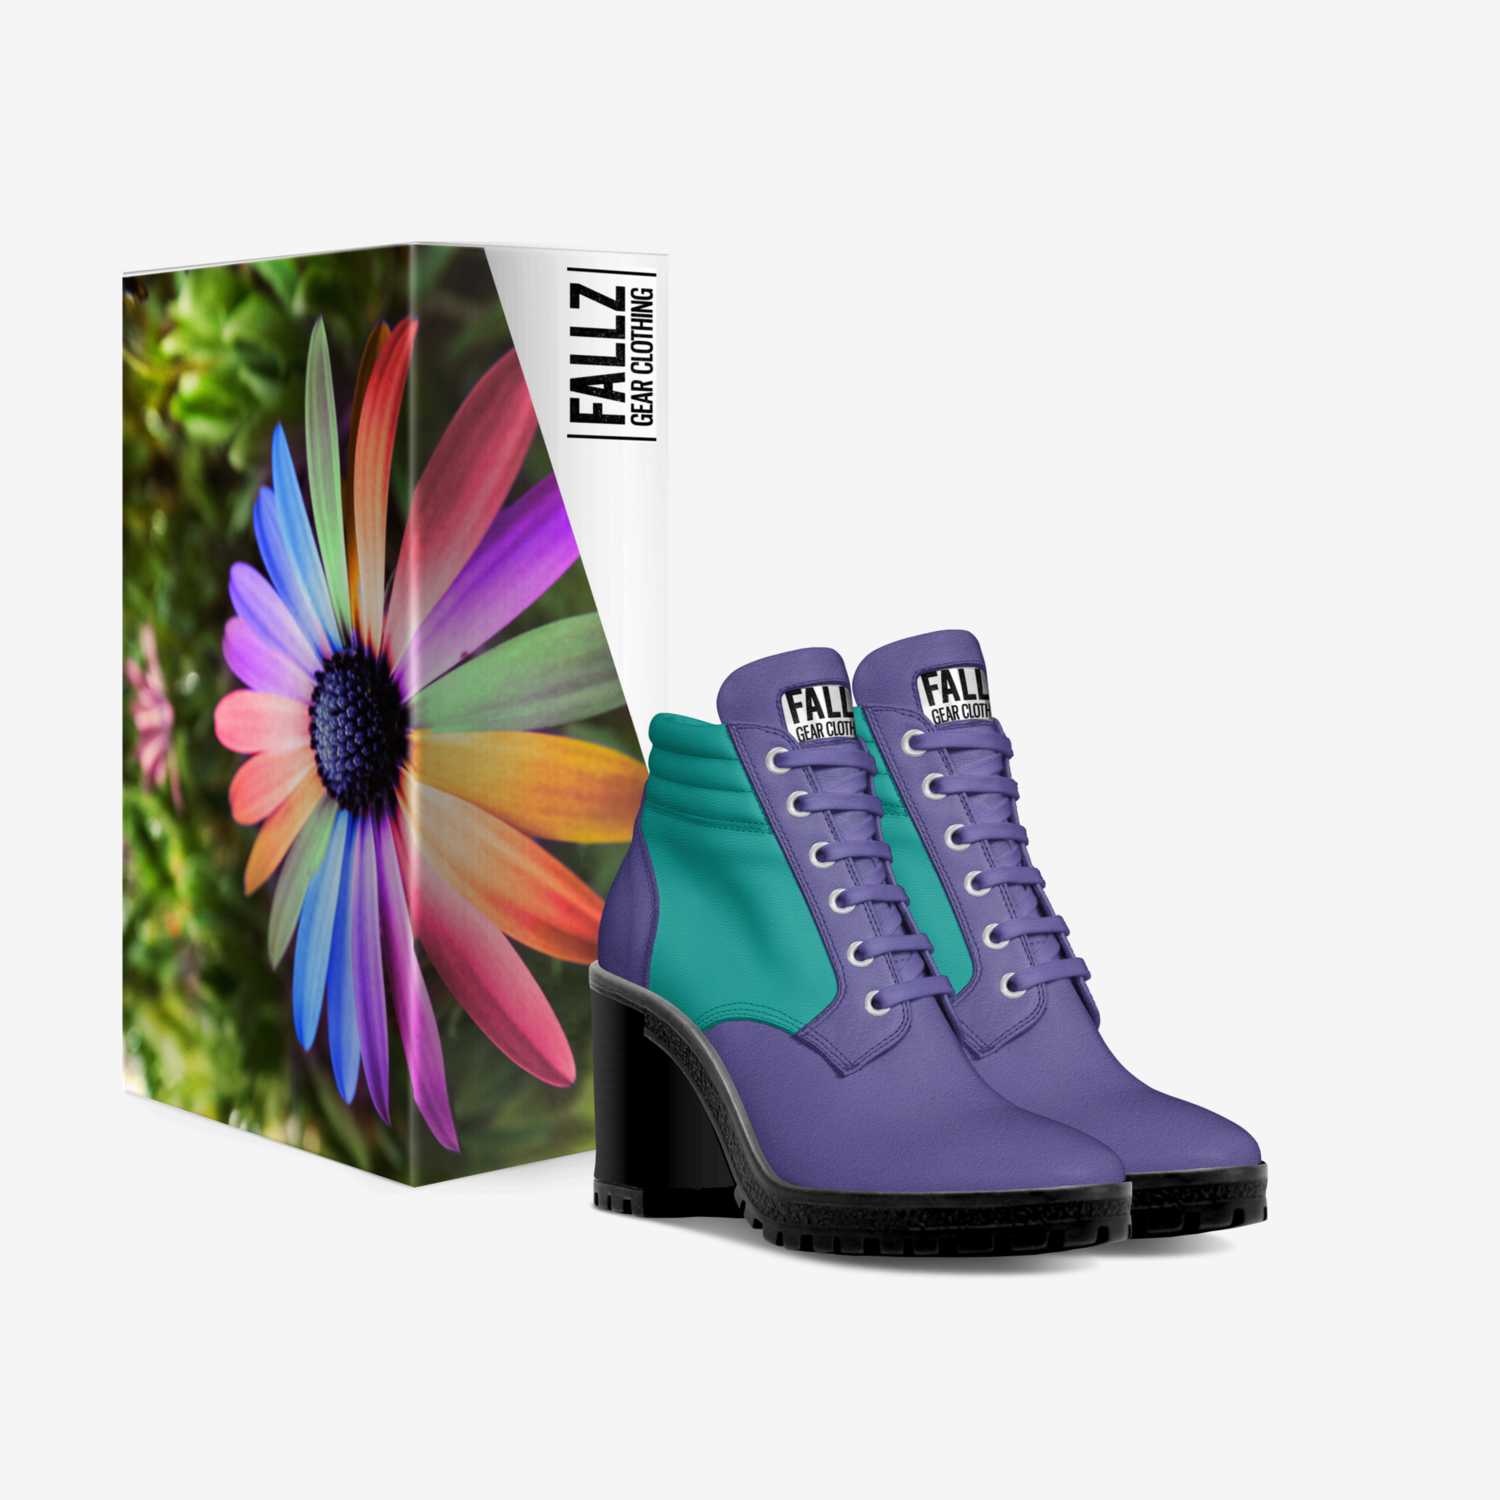 Fallz Gear: Flower custom made in Italy shoes by Fallz Gear | Box view